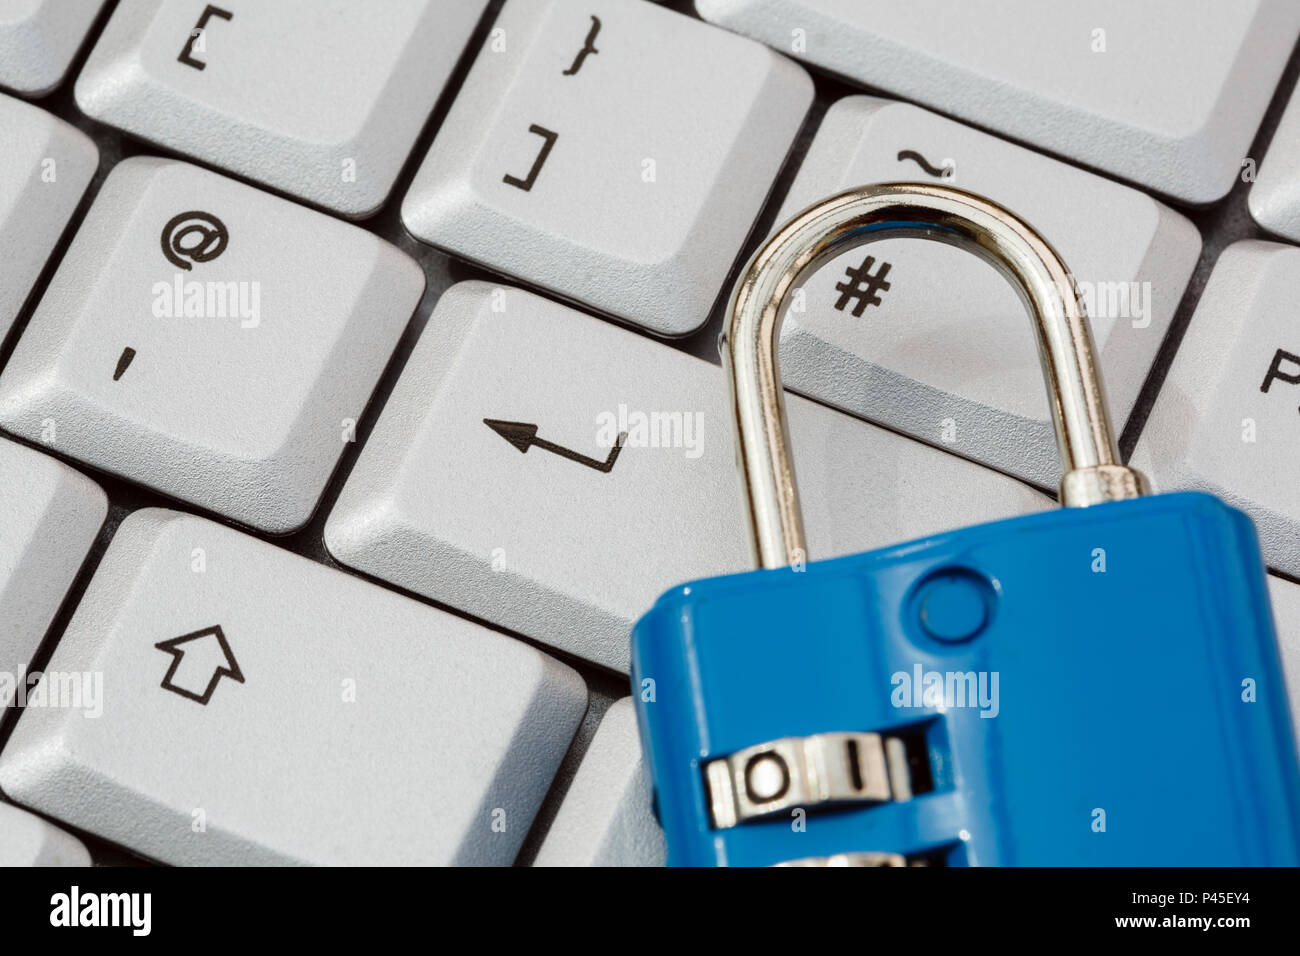 Un clavier avec touche entrée et un cadenas pour illustrer la cyber-sécurité en ligne et la protection des données PIBR concept. Angleterre Royaume-uni Grande-Bretagne Banque D'Images